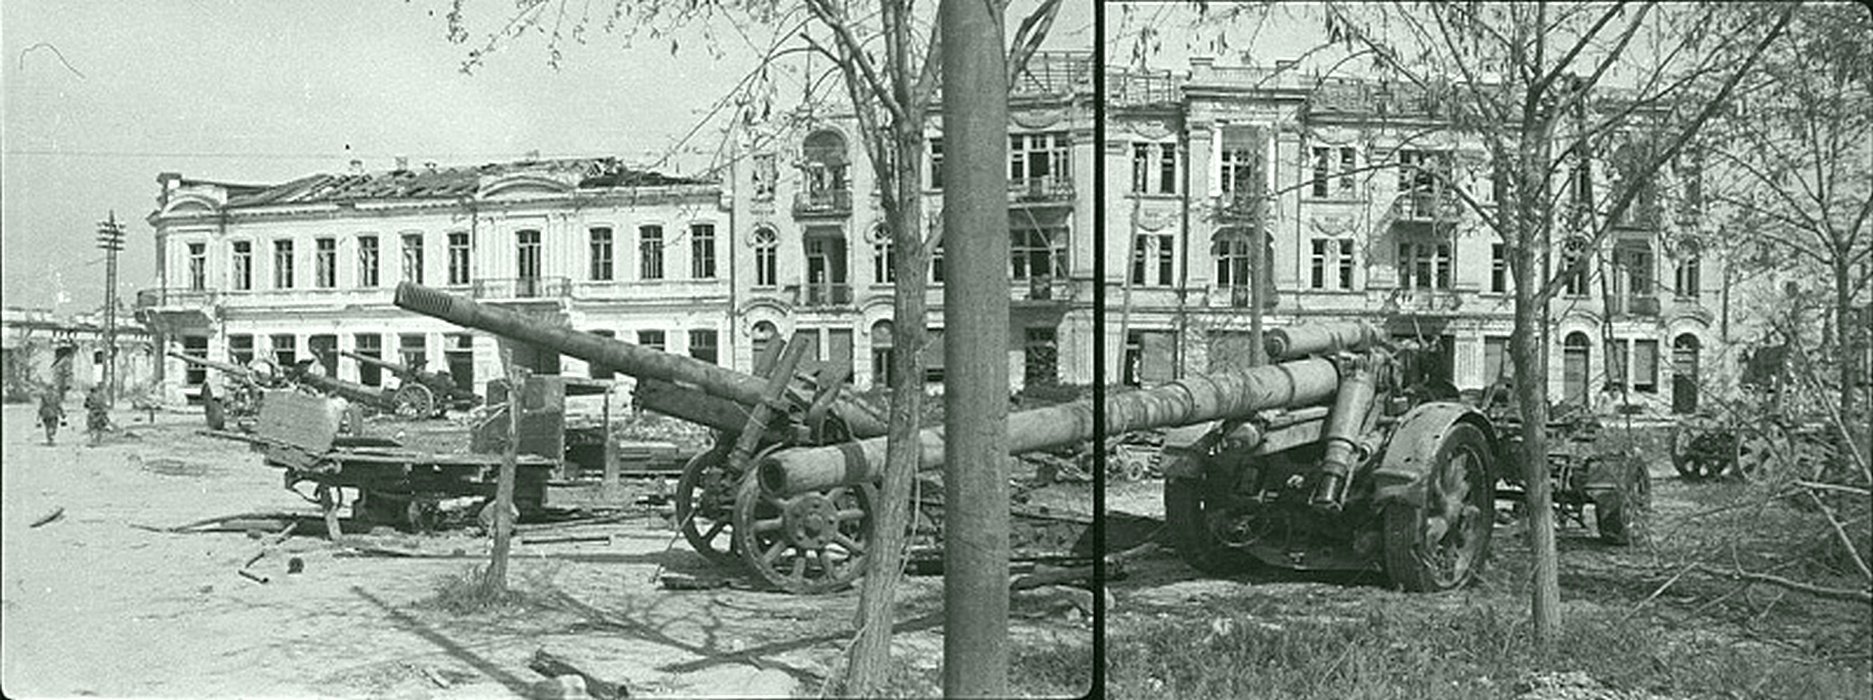 Артиллерийская бухта Севастополь 1944